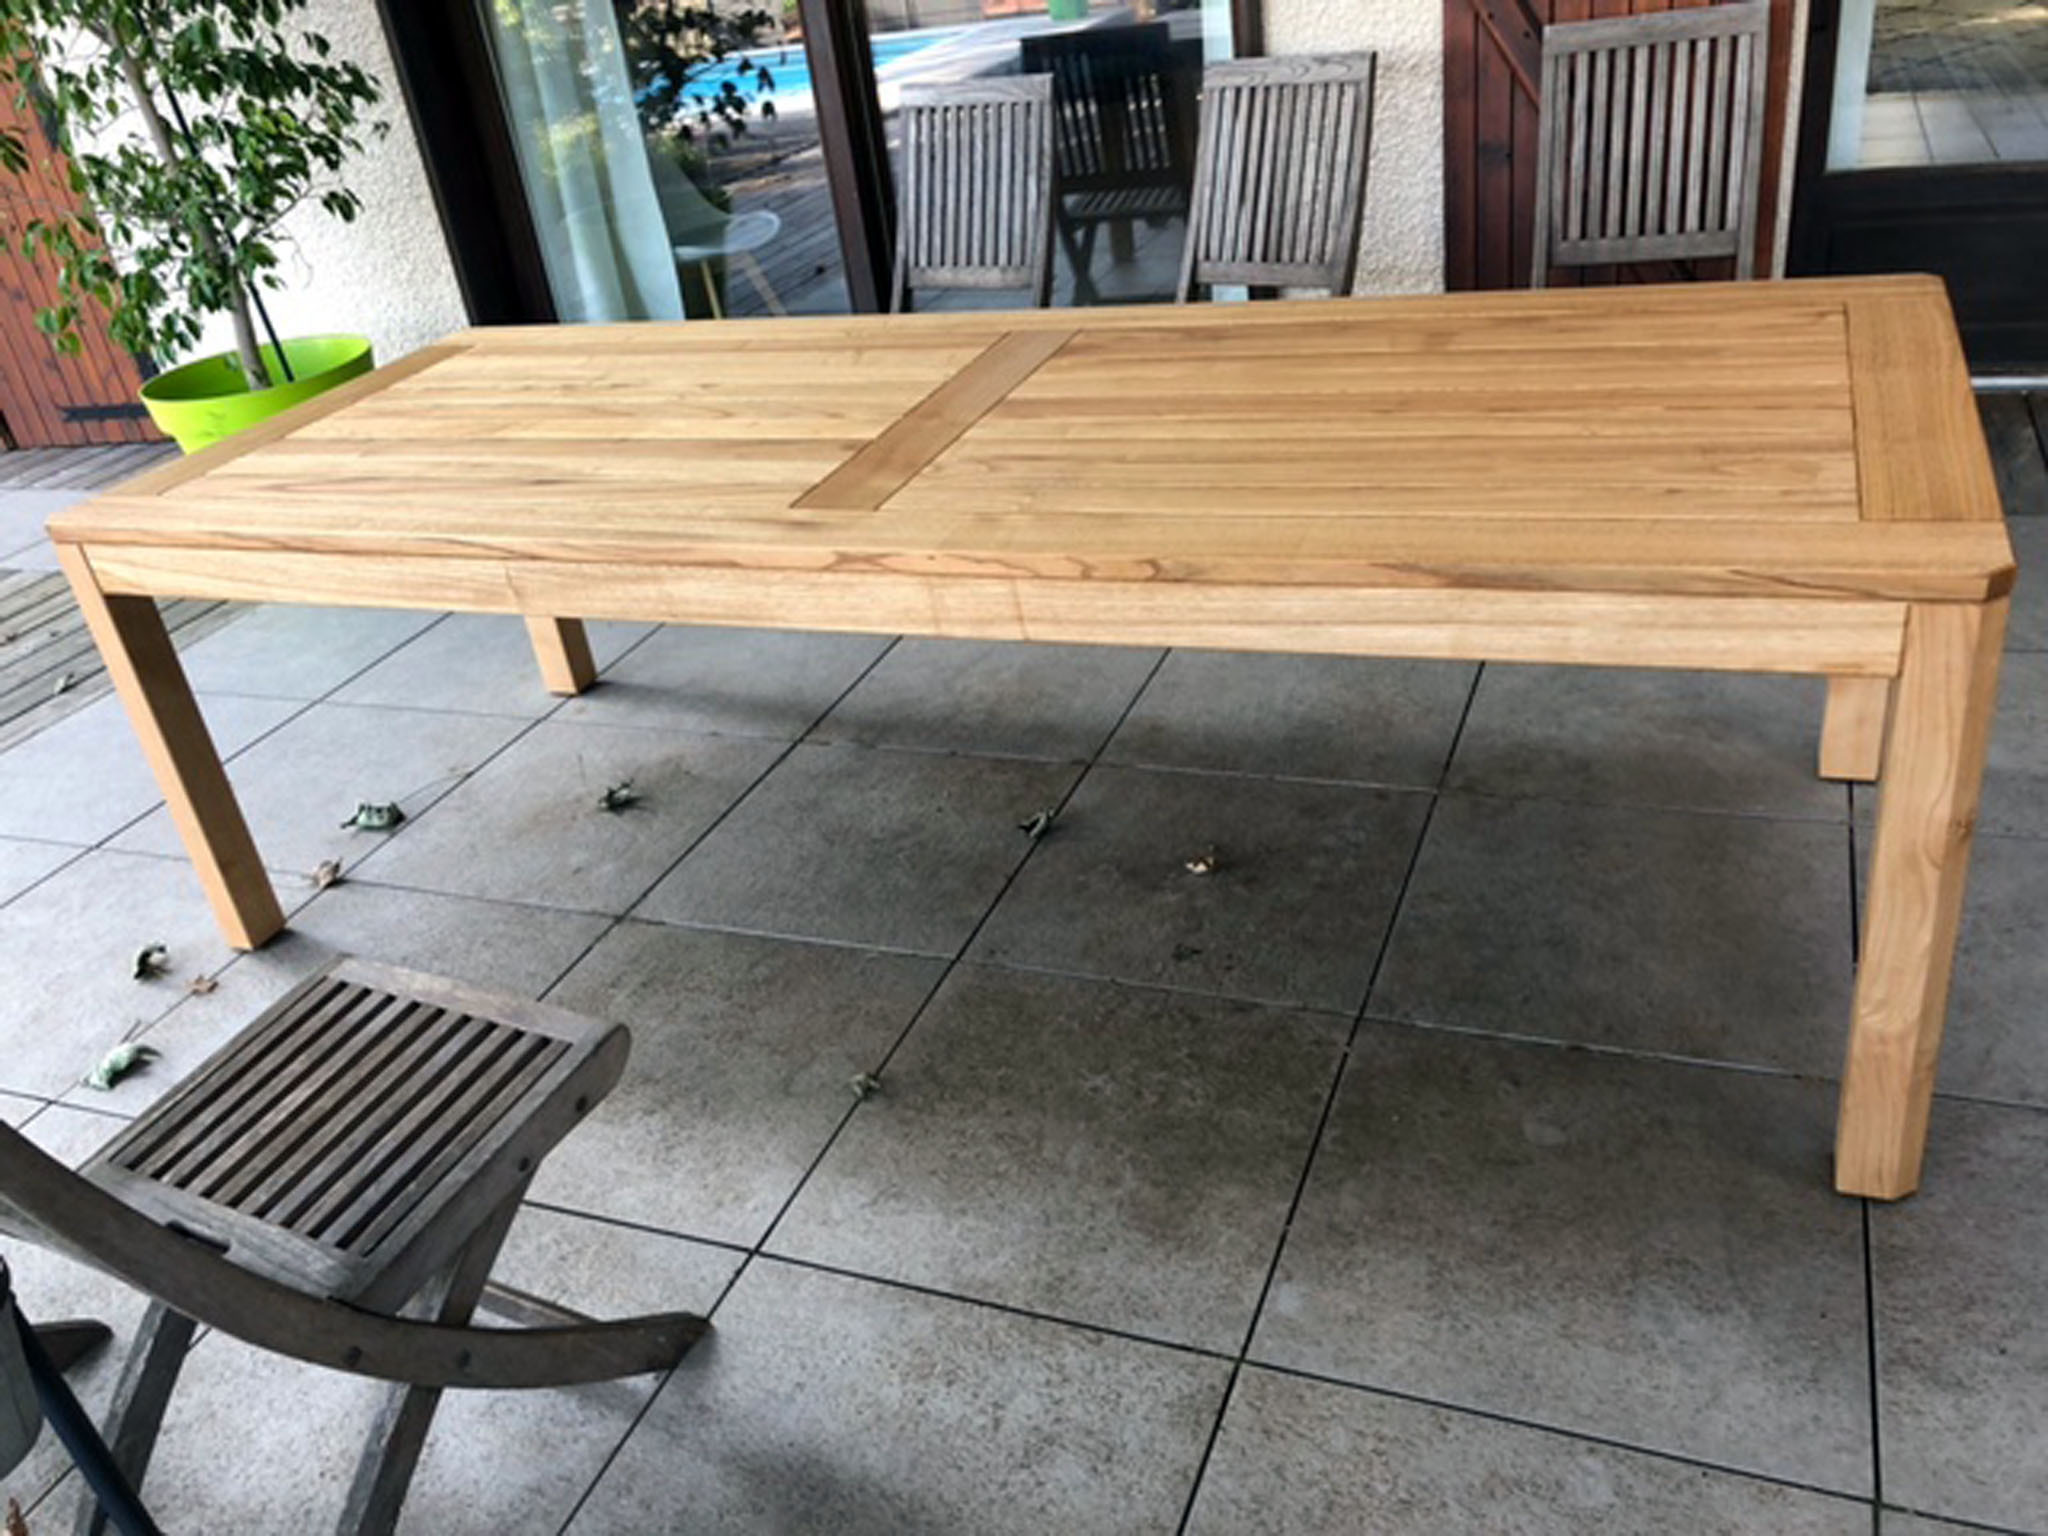 Cette table a reçu une finition huilée adapté à l'extérieur.